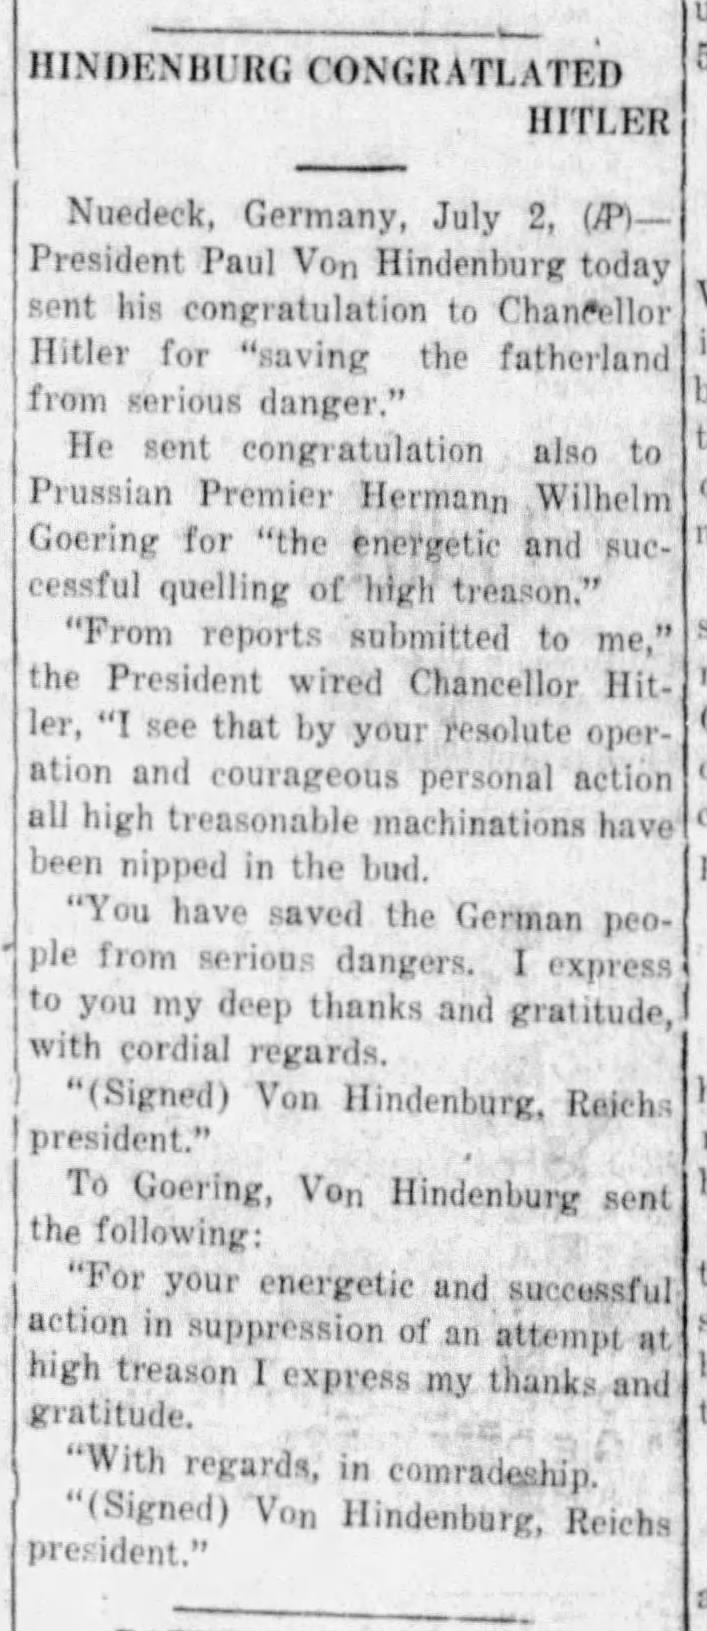 Hindenburg Congratulated Hitler